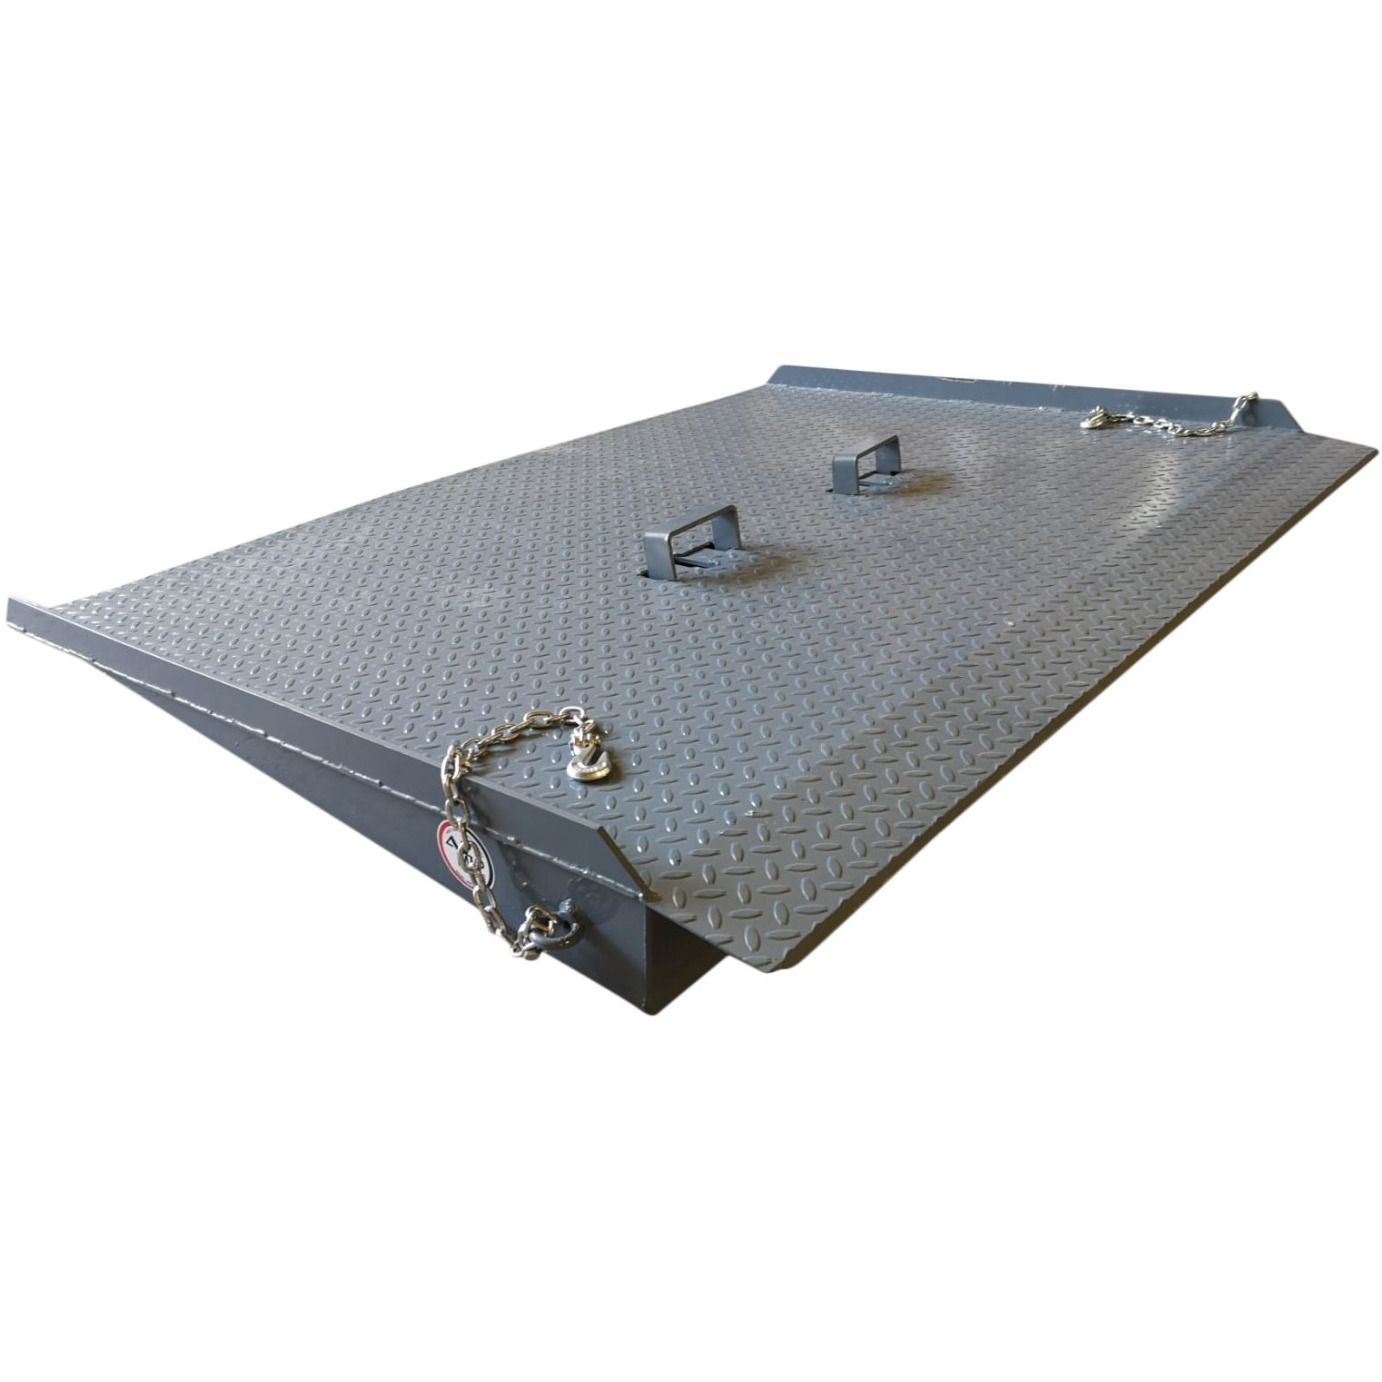 Rampe d'accès pour conteneur  au sol, déplaçable pour des opérations de chargement / déchargement rapides - Capacité 8T - AZ Ramp HCNN-08_0